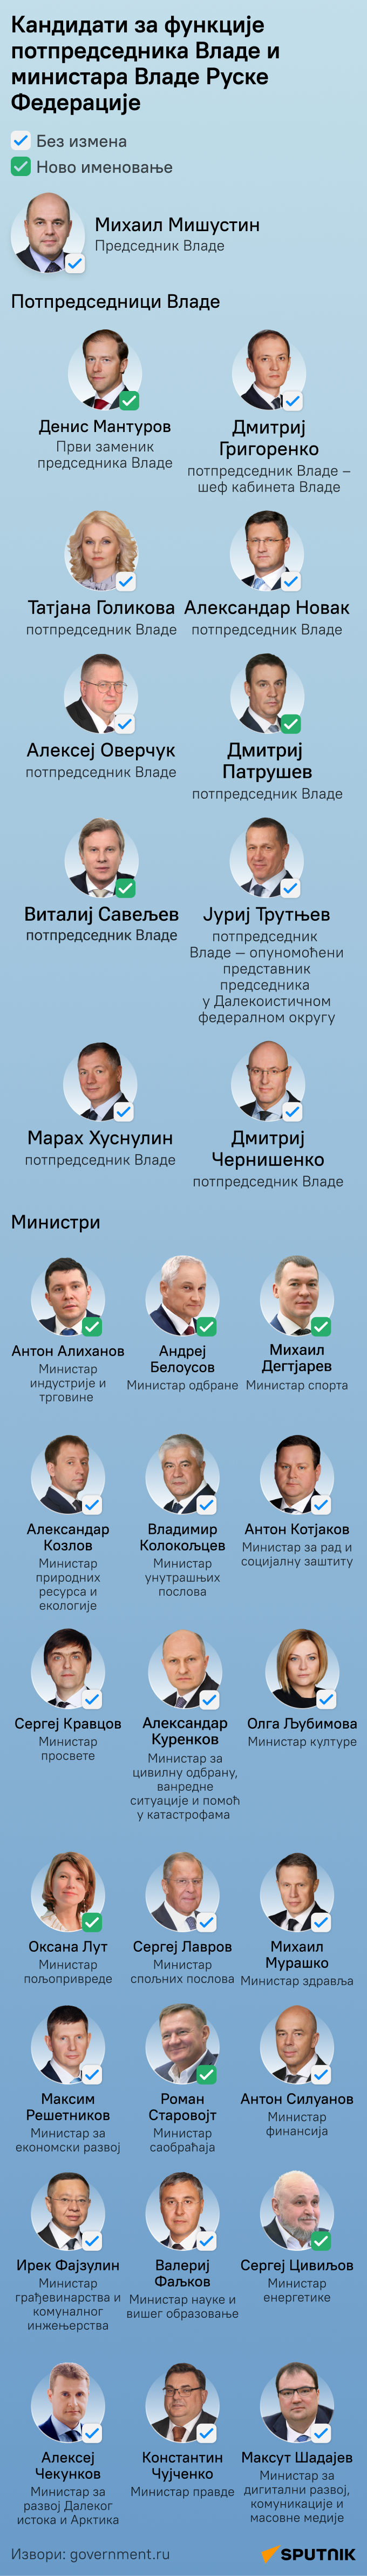 Кандидати за потпредседнике у новој Влади Русије ЋИРИЛИЦА деск - Sputnik Србија